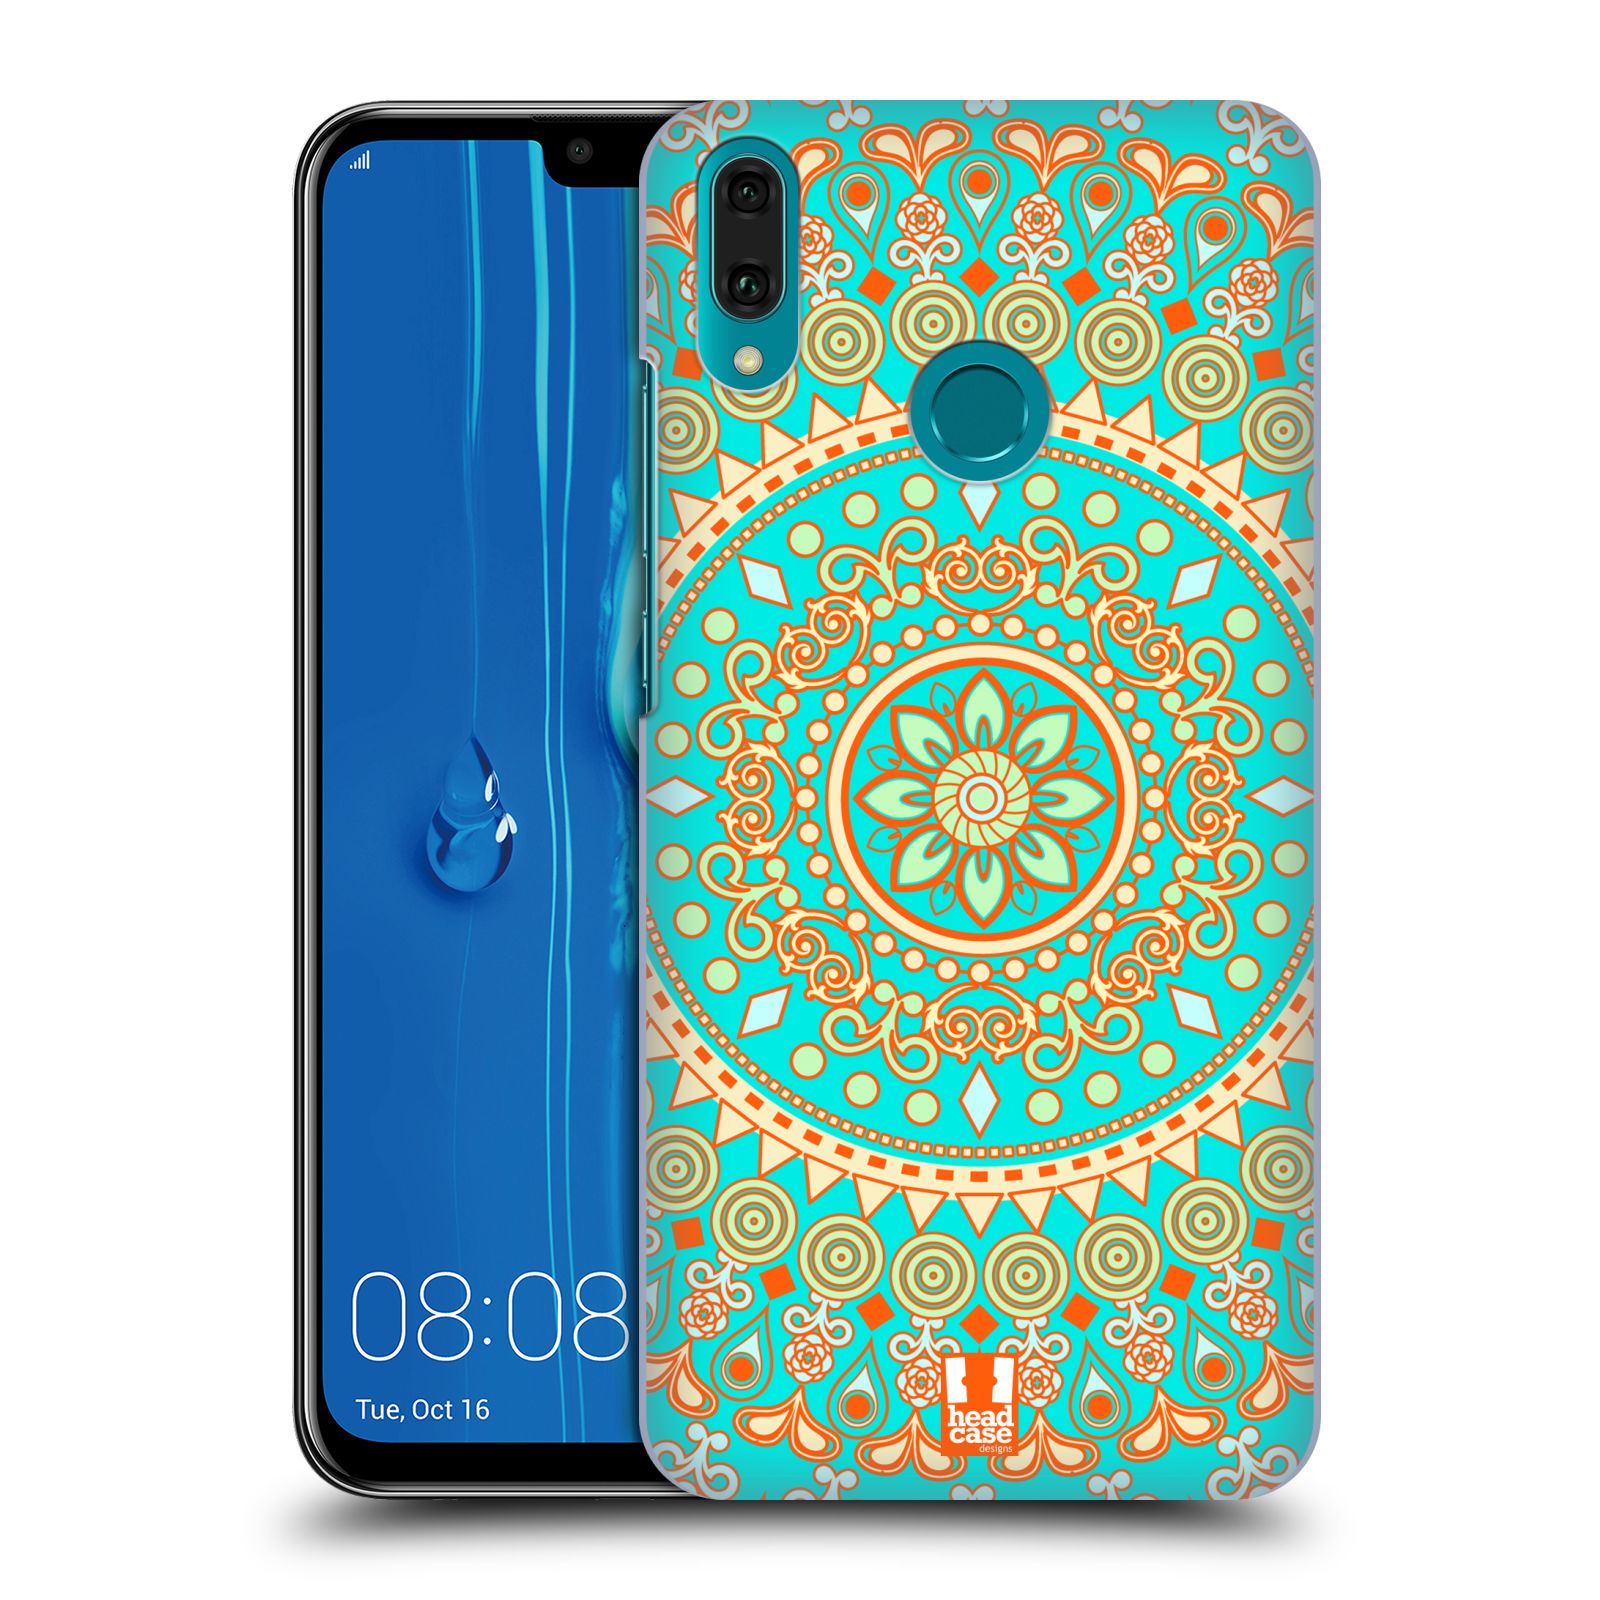 Pouzdro na mobil Huawei Y9 2019 - HEAD CASE - vzor Indie Mandala slunce barevný motiv TYRKYSOVÁ, ZELENÁ